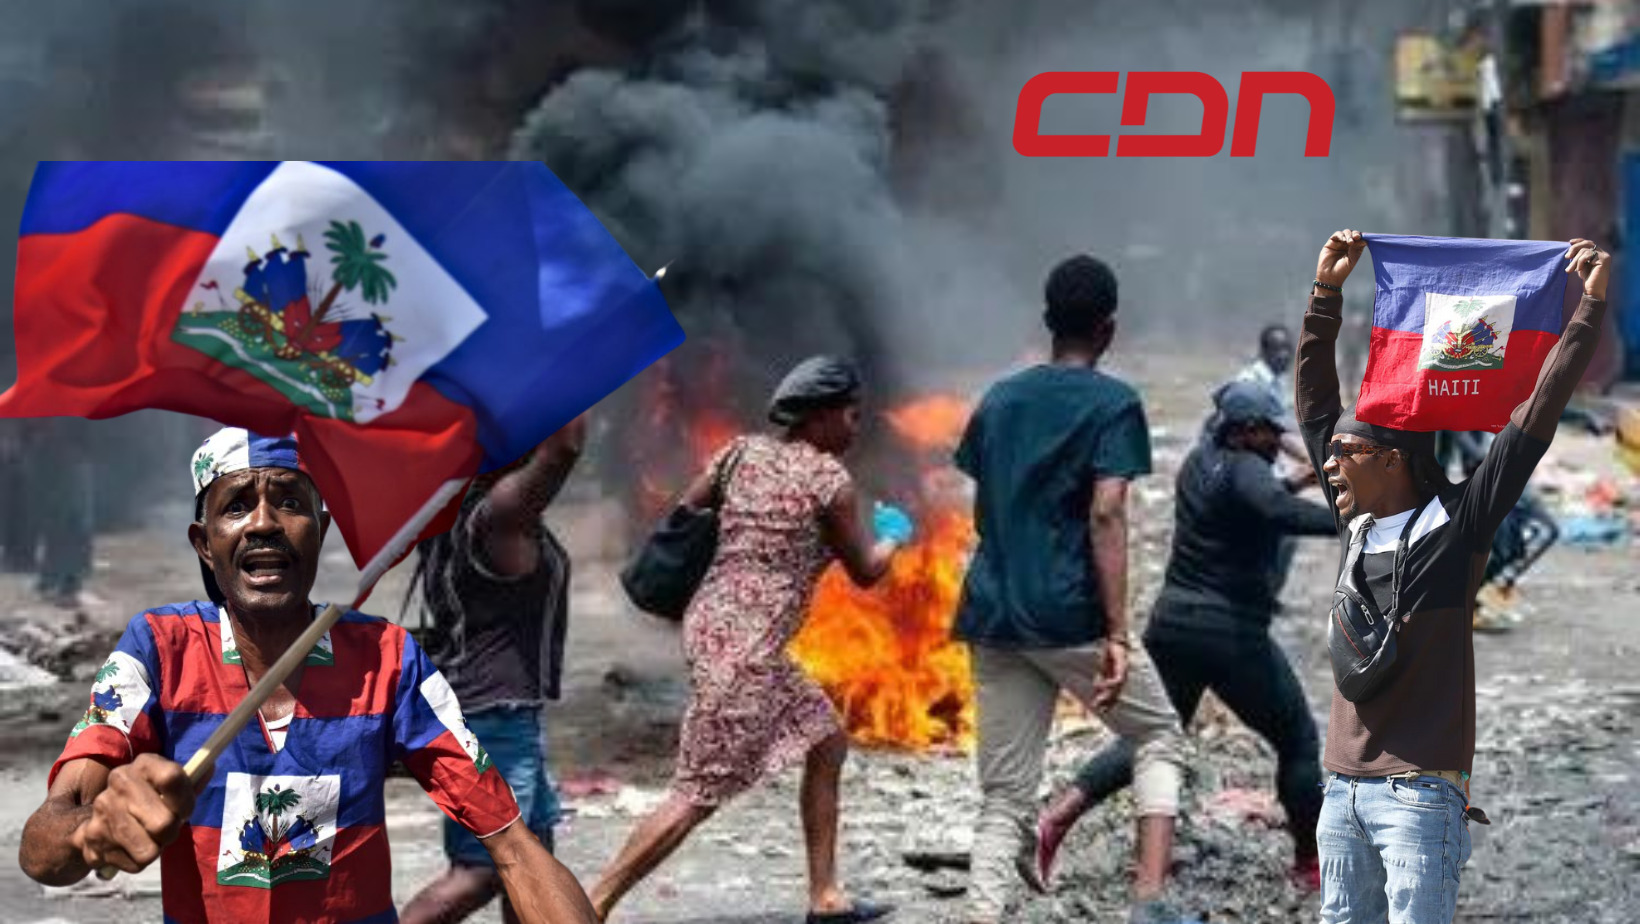 Con ataques, saqueos e incendios tras días de aparente calma vuelve la tensión a Haití